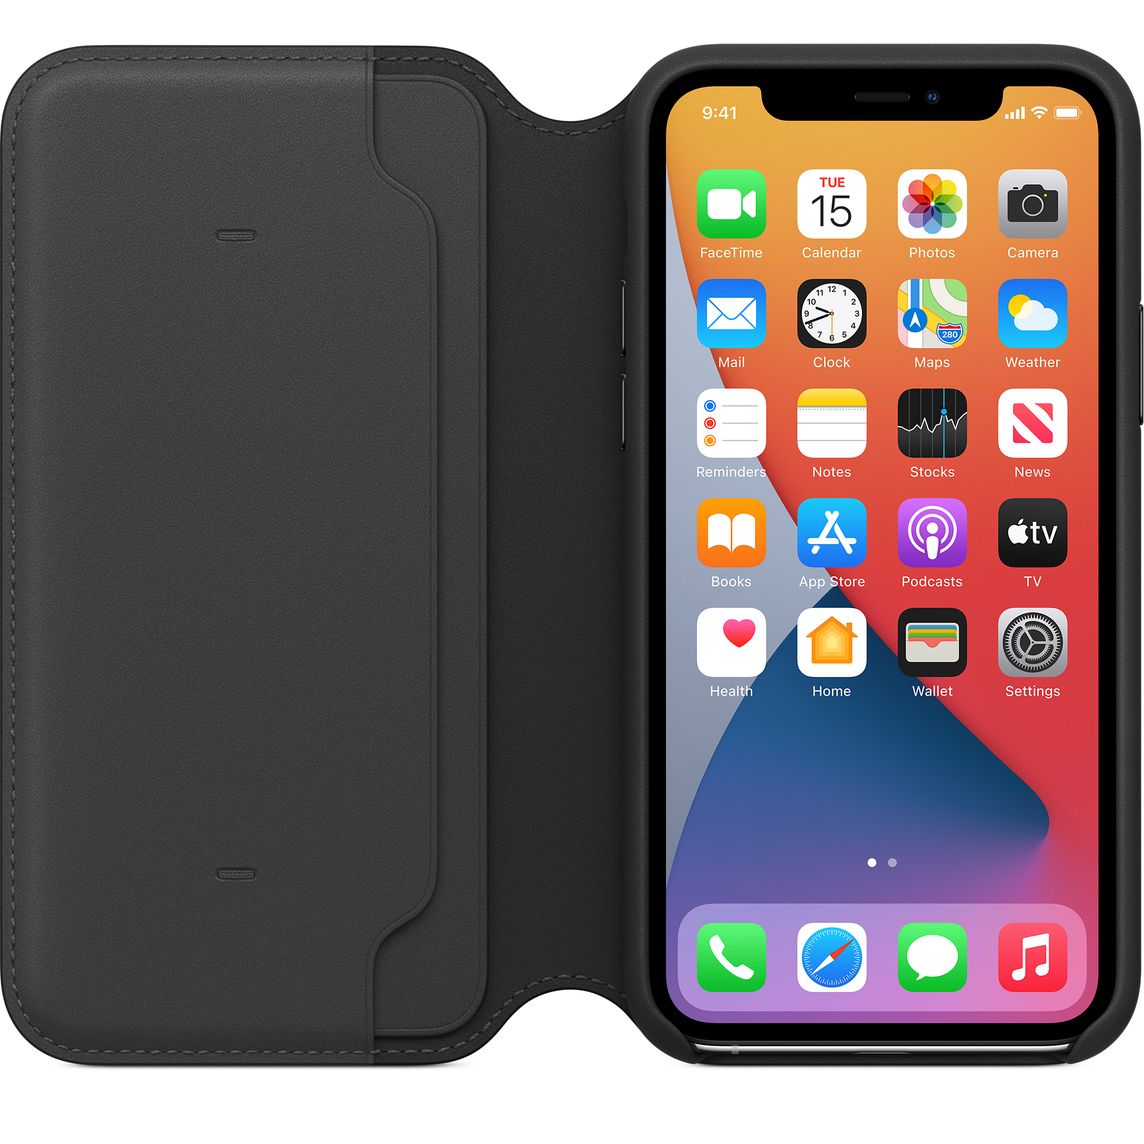 Leather Folio Case iPhone 11 Pro Max